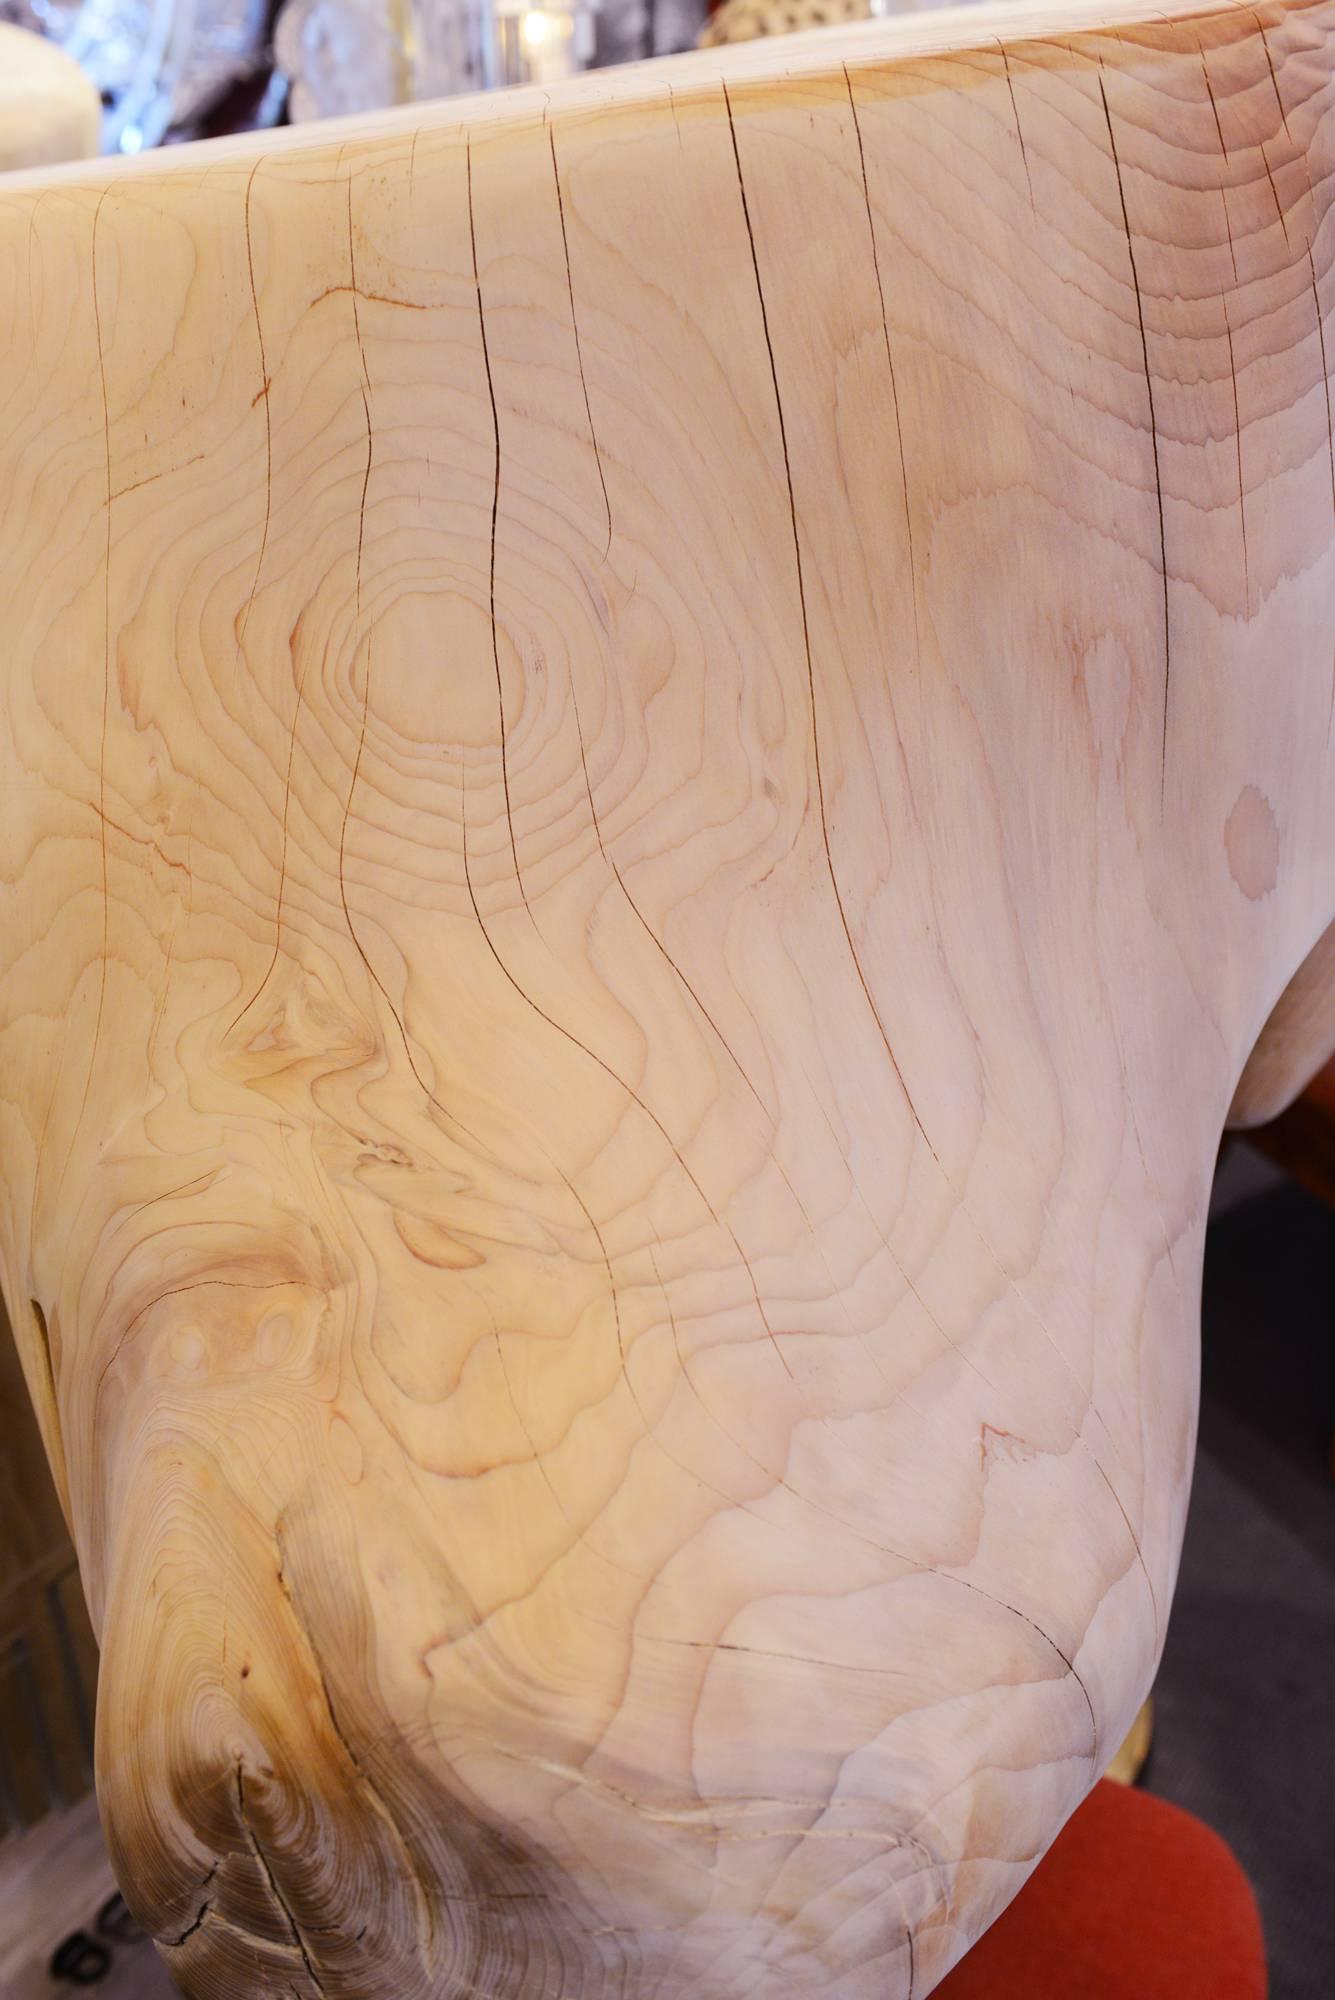 Trone Cedar Tree a in Hand-Carved Solid Cedar Wood 4